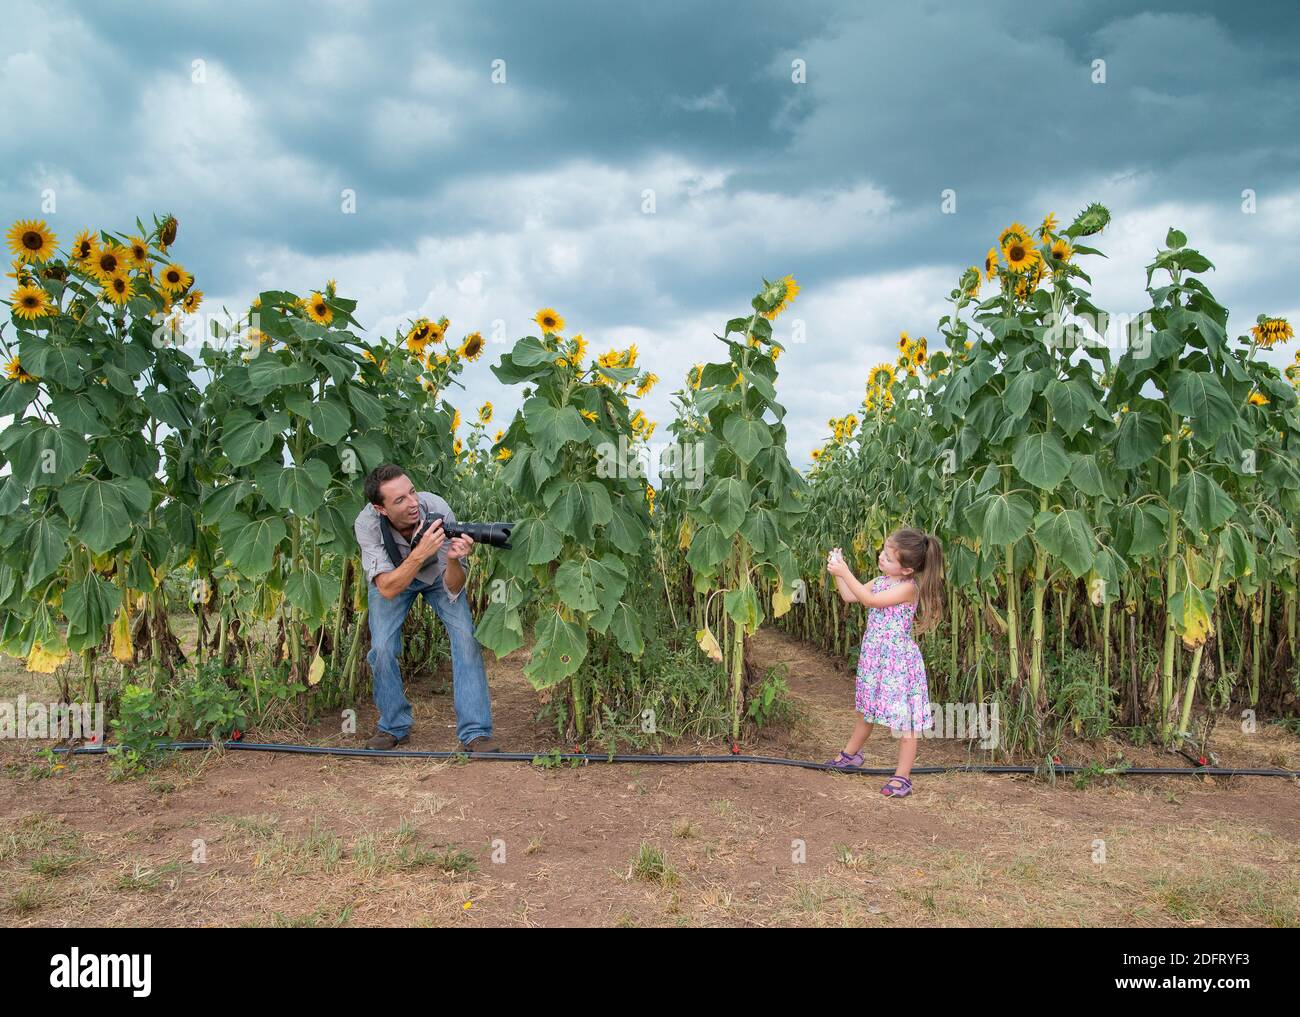 Ein Vater und eine Tochter haben viel Spaß beim Fotografieren von einander in einem Sonnenblumenfeld. Stockfoto